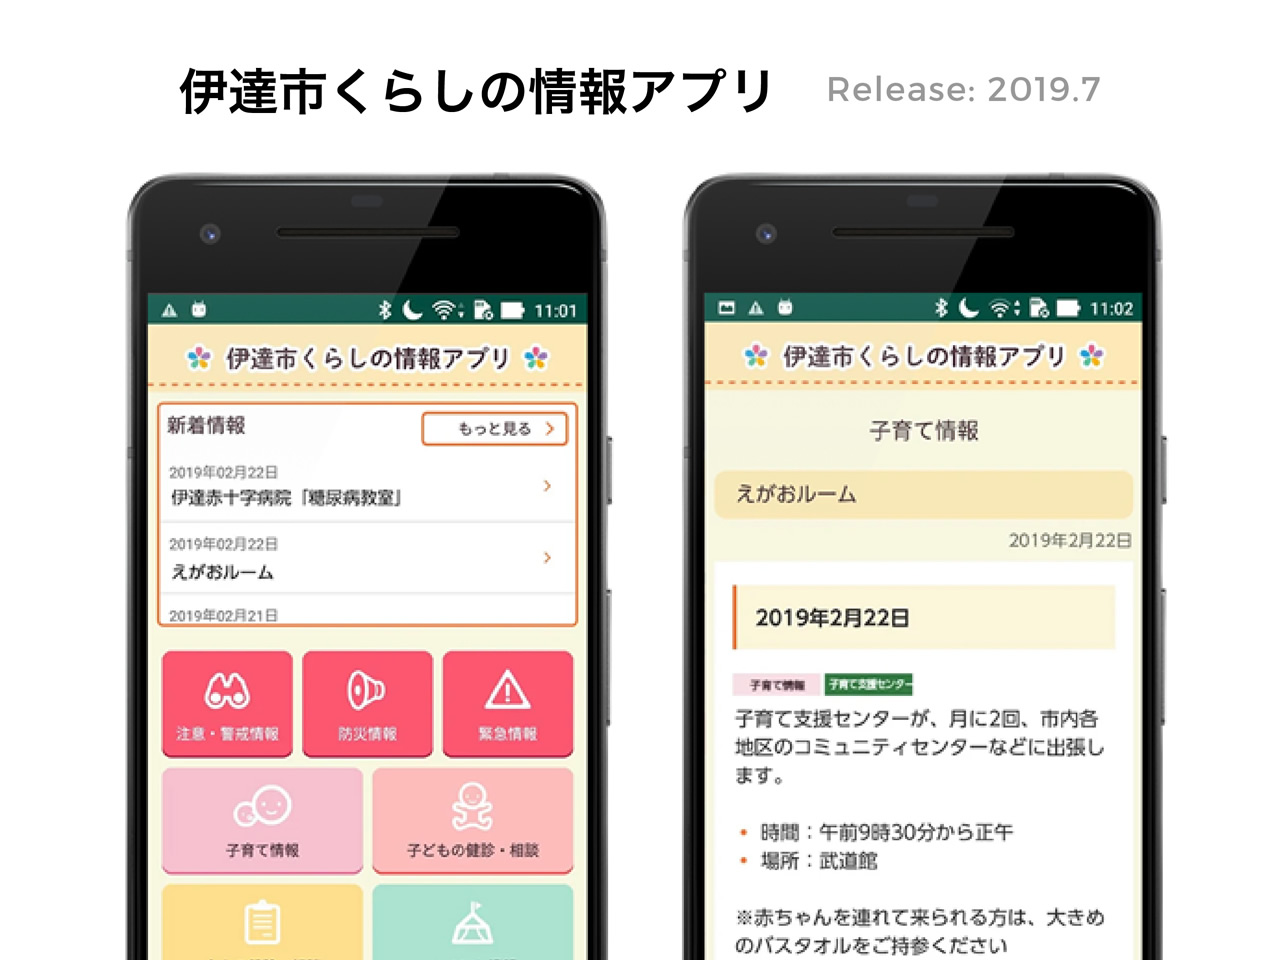 イベントや健診などのくらしの情報を見ることができる北海道伊達市の公式アプリ